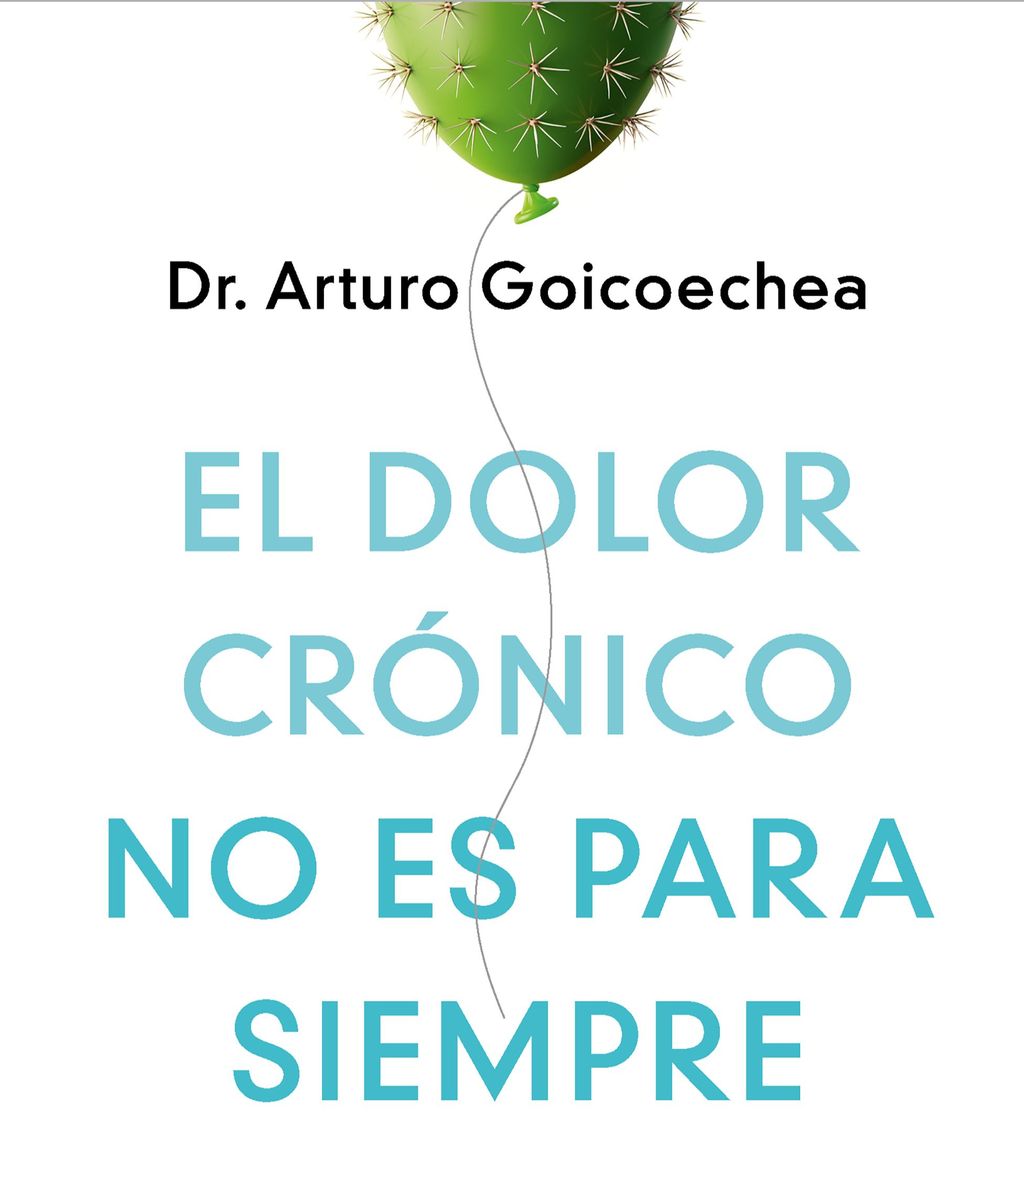 Portada del libro 'El dolor crónico no es para siempre', de Arturo Goicoechea